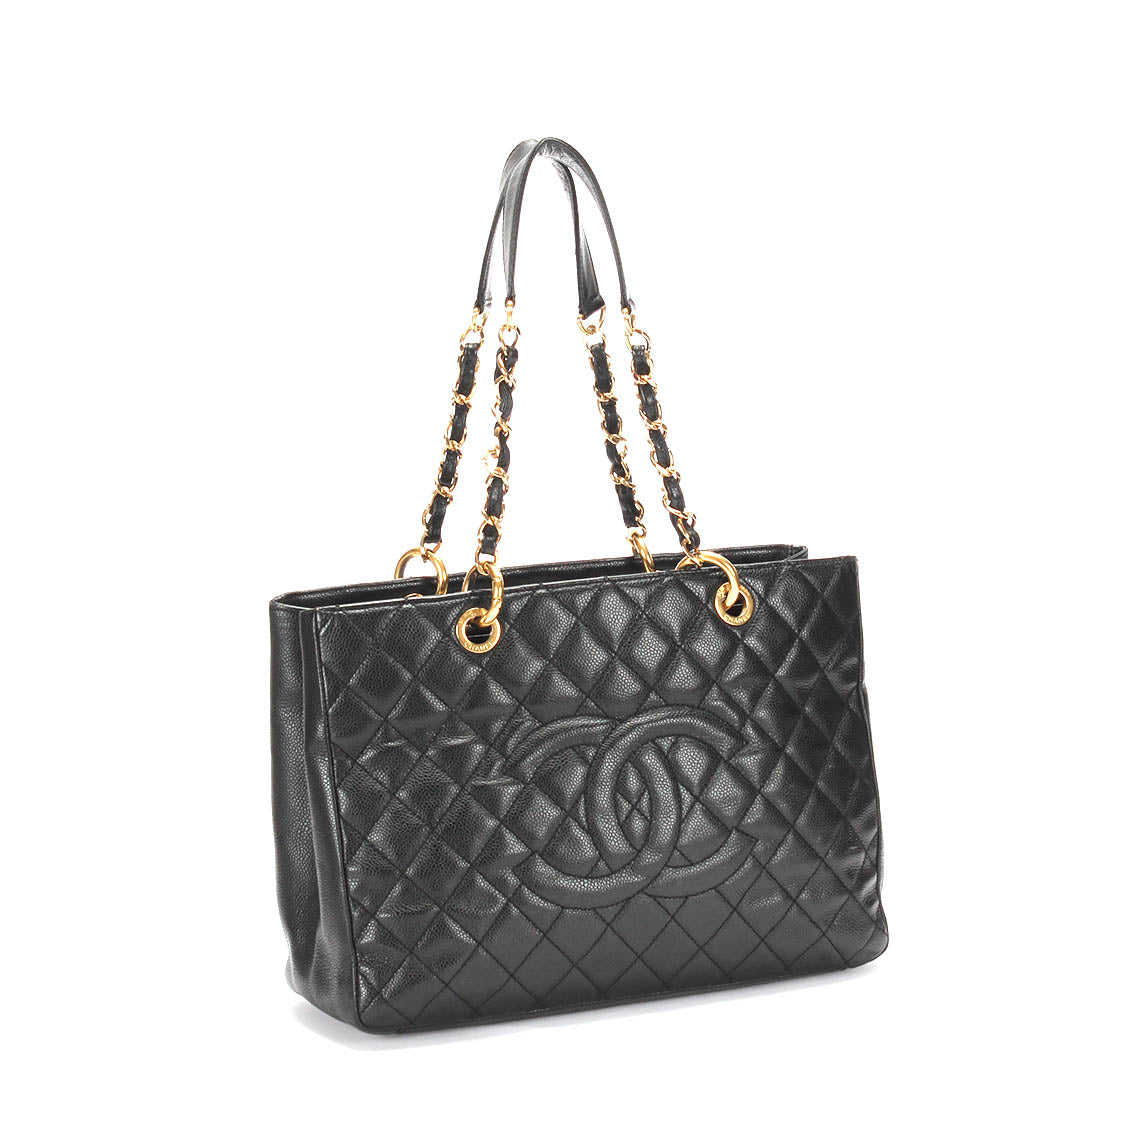 Chanel GST链手提包